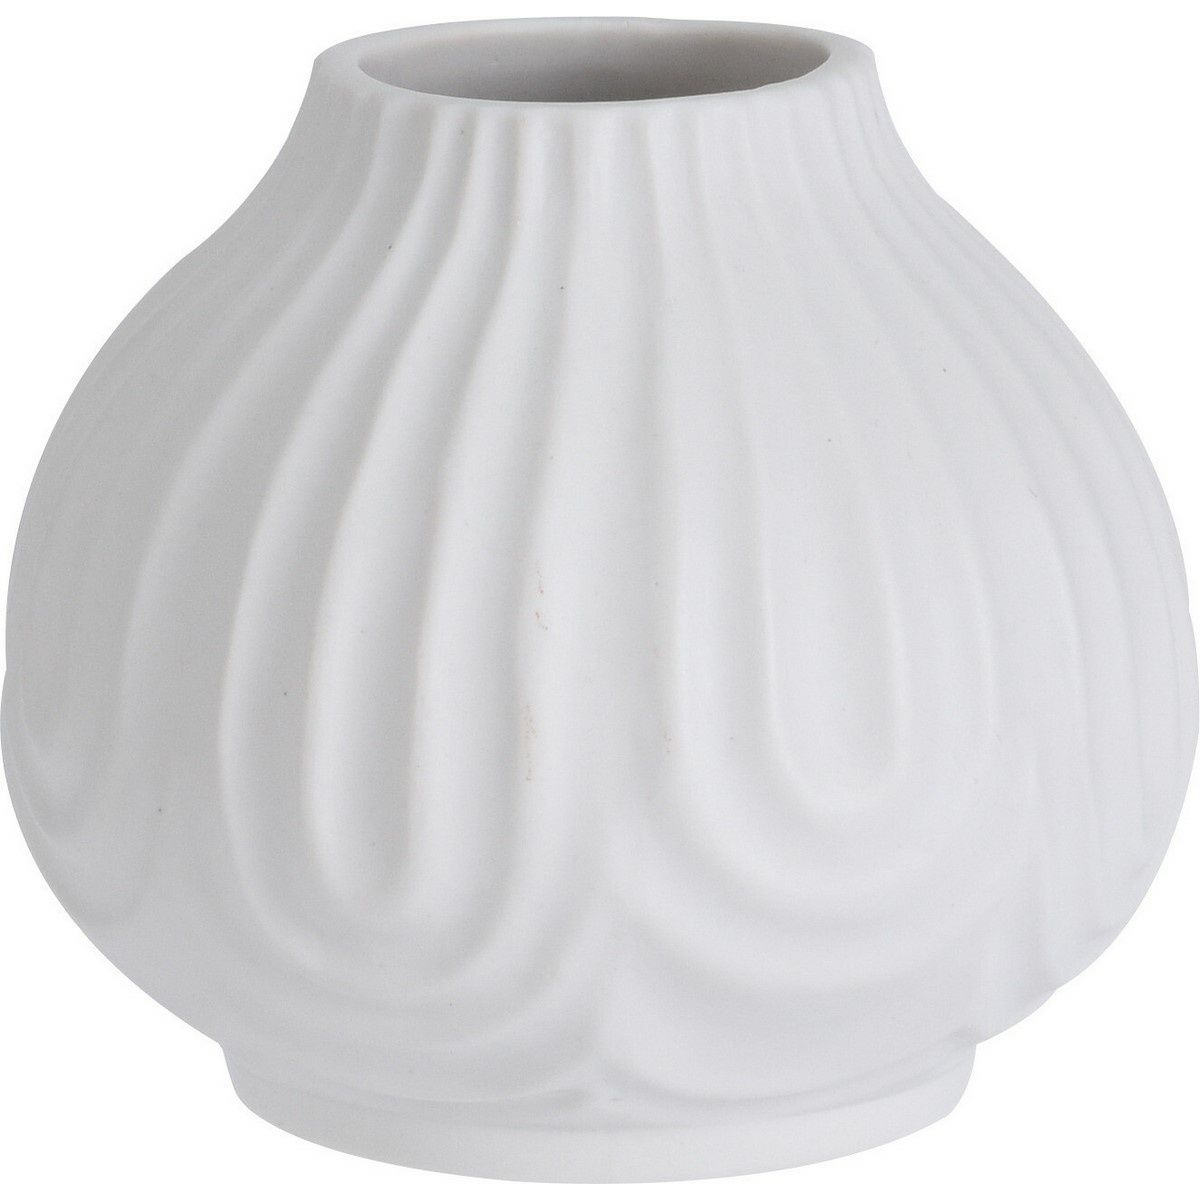 Porcelánová váza Andaluse bílá, 12 x 11 cm - 4home.cz